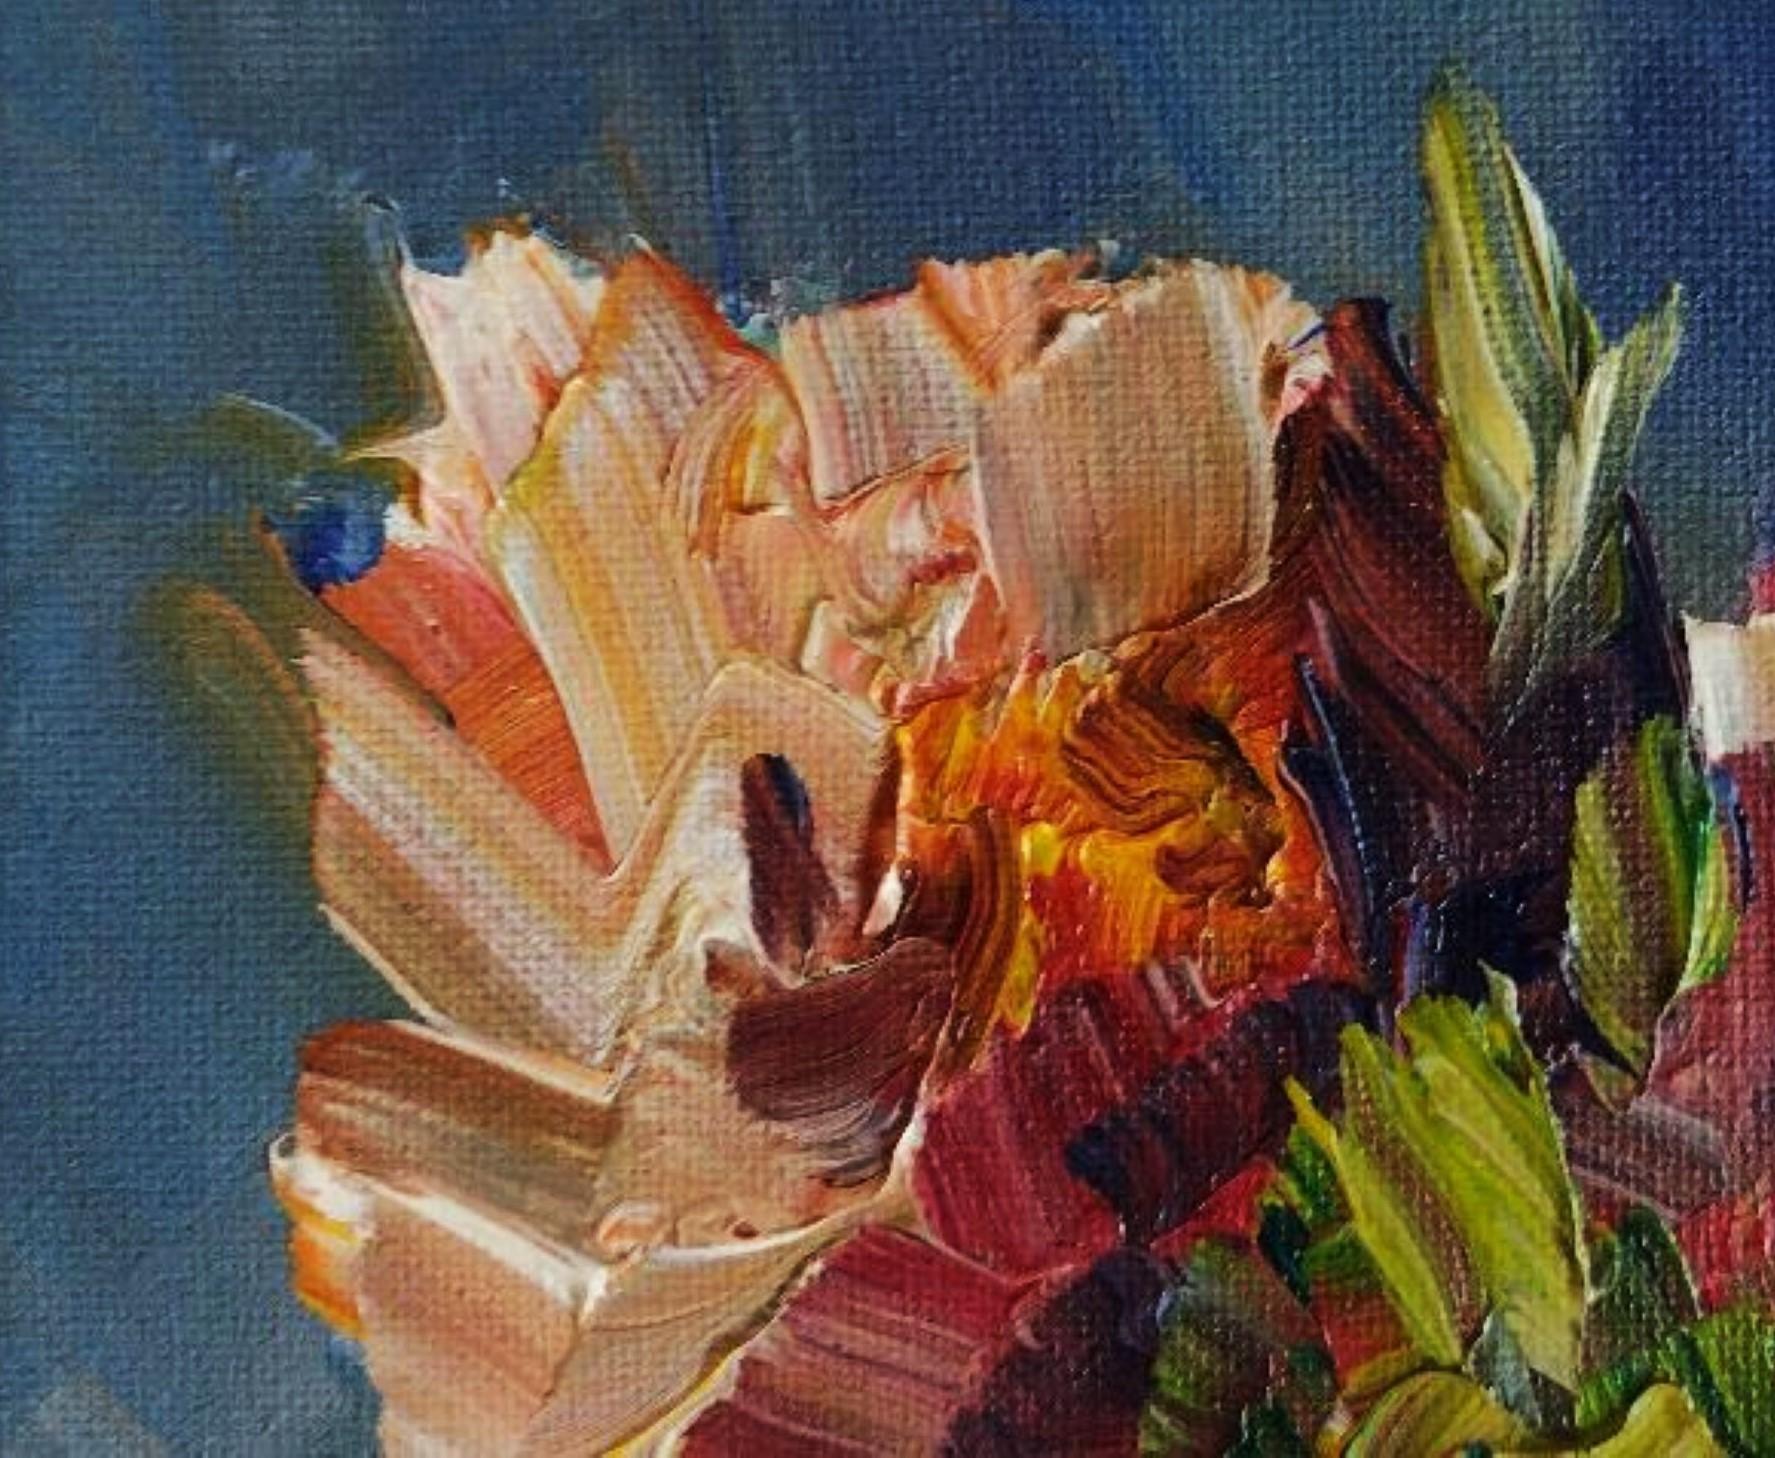 Vase mit Blumen I – Original impressionistisches Ölgemälde auf Leinwand 2022 (Impressionismus), Painting, von Jose Lima